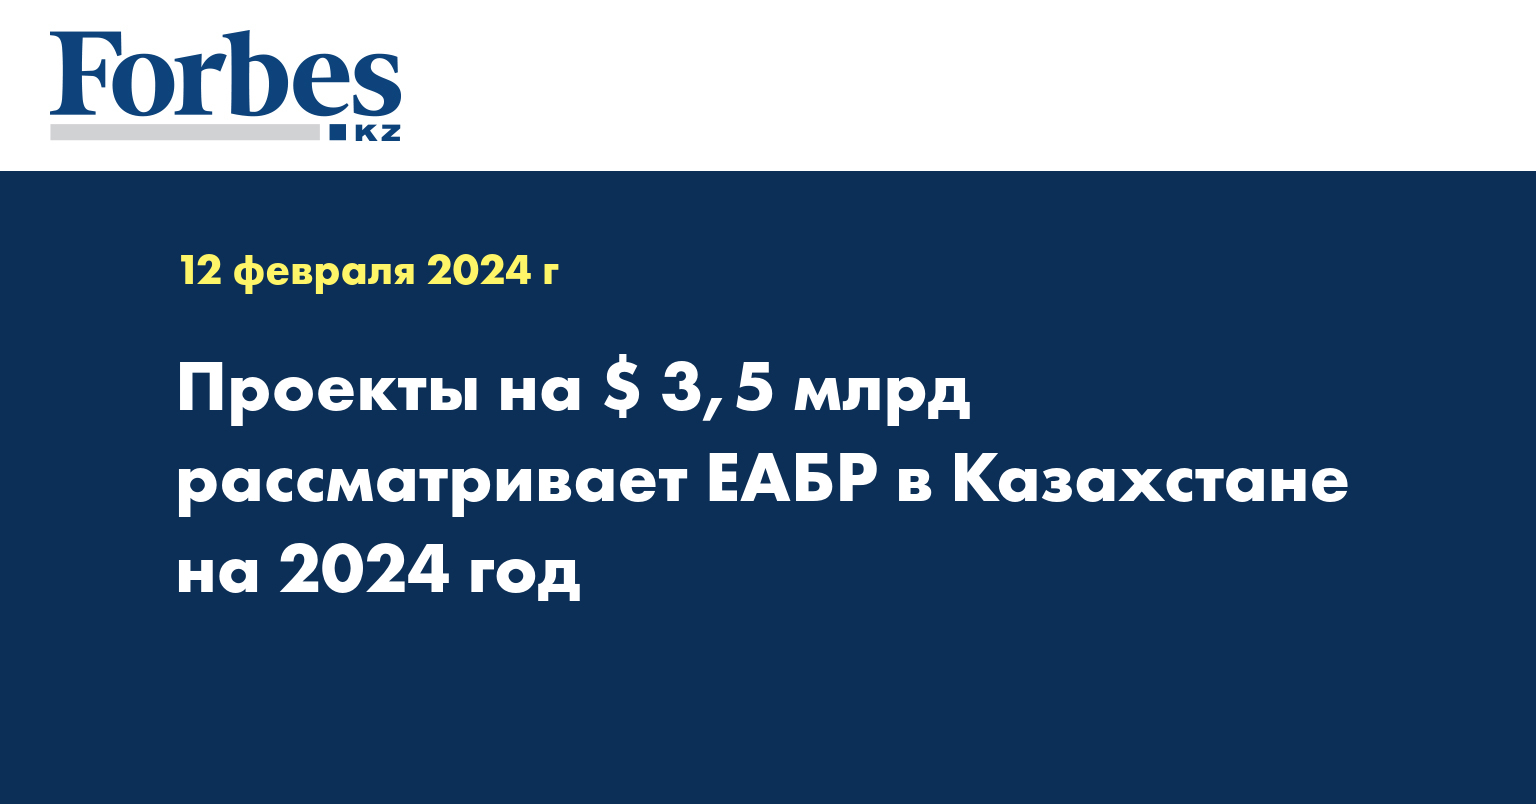 Проекты на $ 3,5 млрд рассматривает ЕАБР в Казахстане на 2024 год